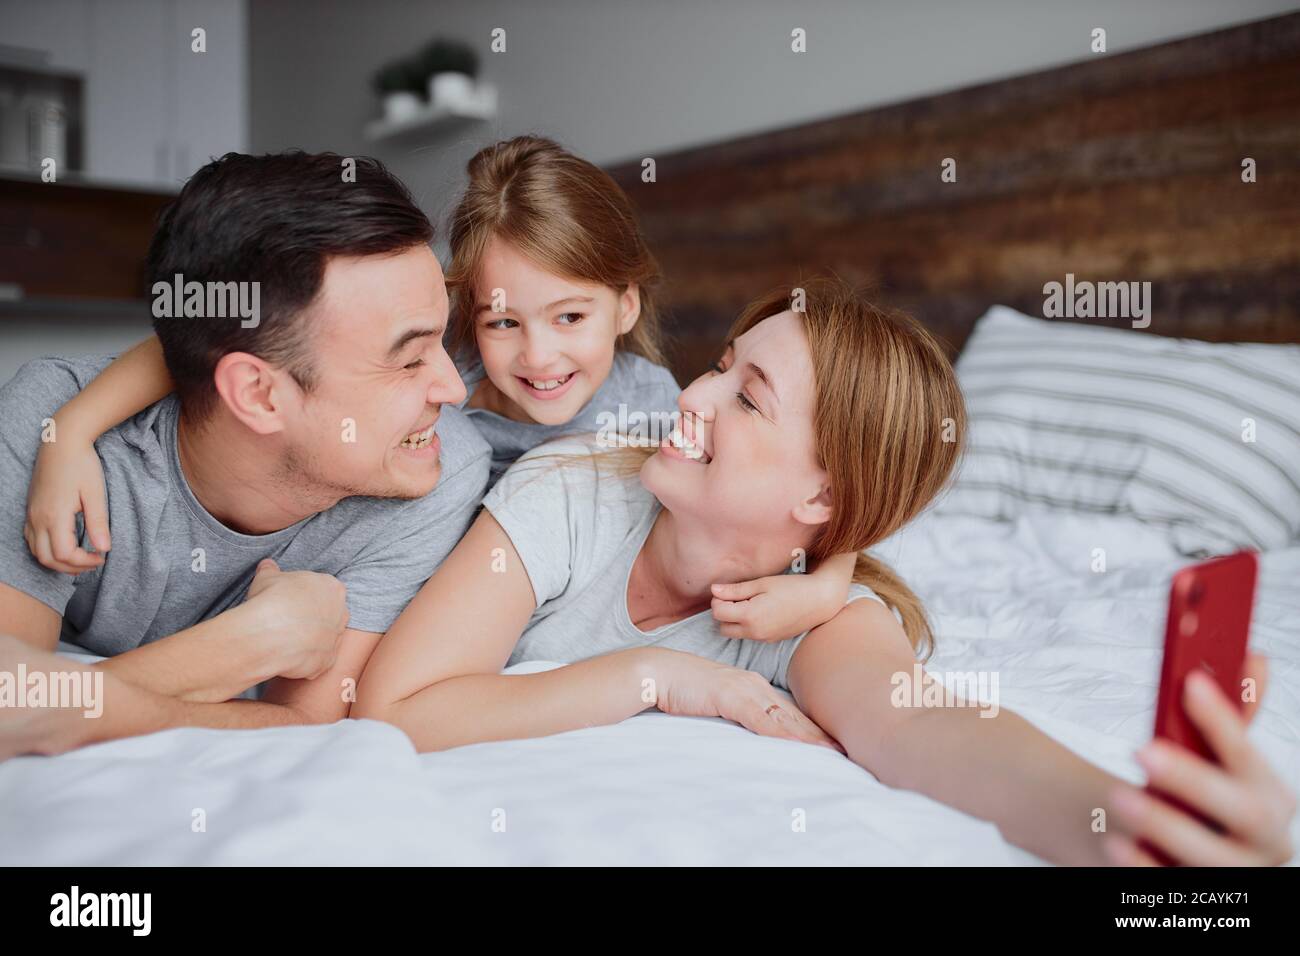 jeunes parents caucasiens allongé sur le lit avec une petite fille enfant, utiliser un smartphone rouge et prendre selfie, émotionnellement famille heureuse Banque D'Images